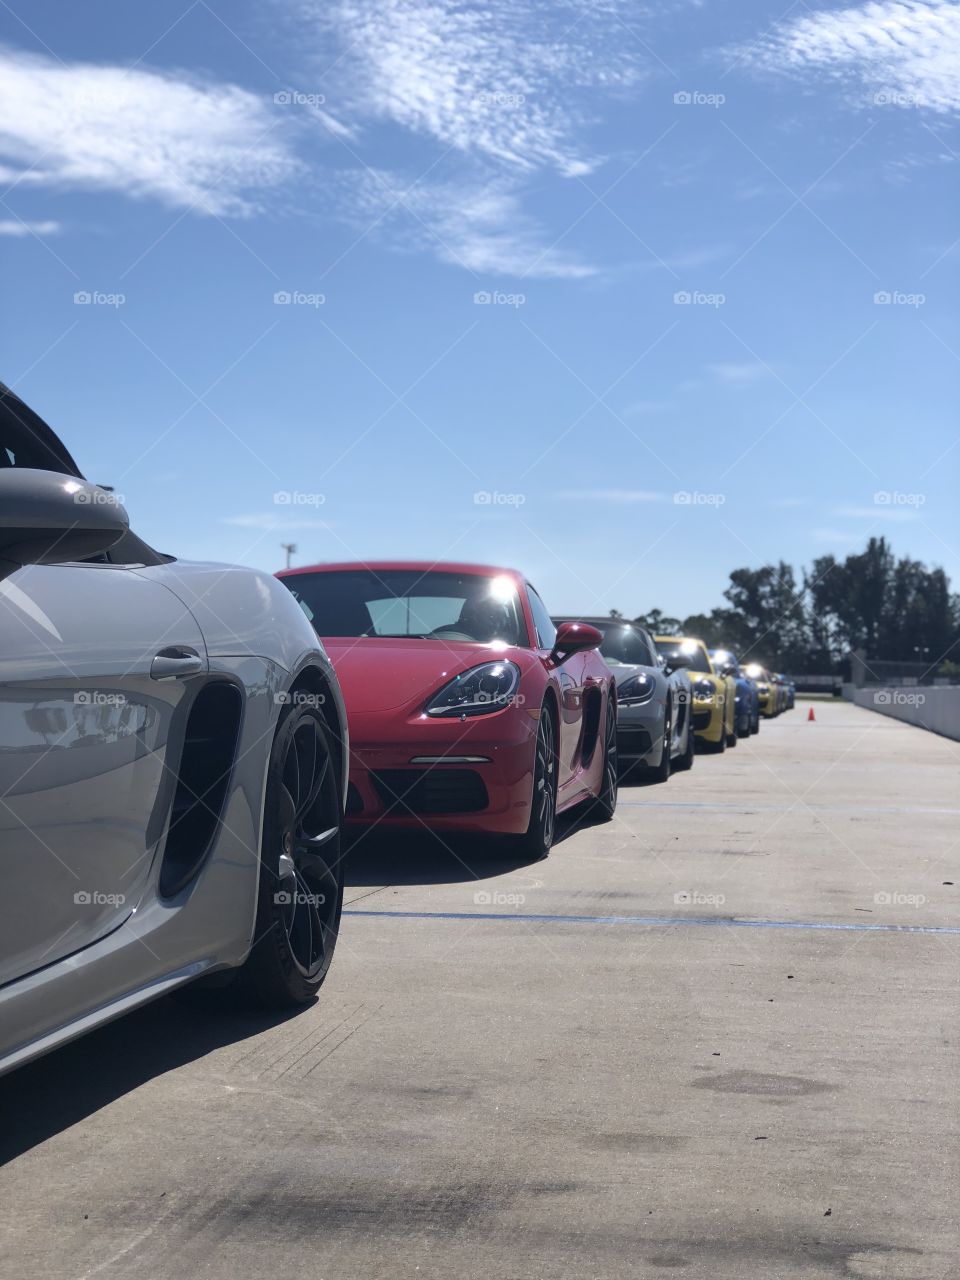 A line of Porsches